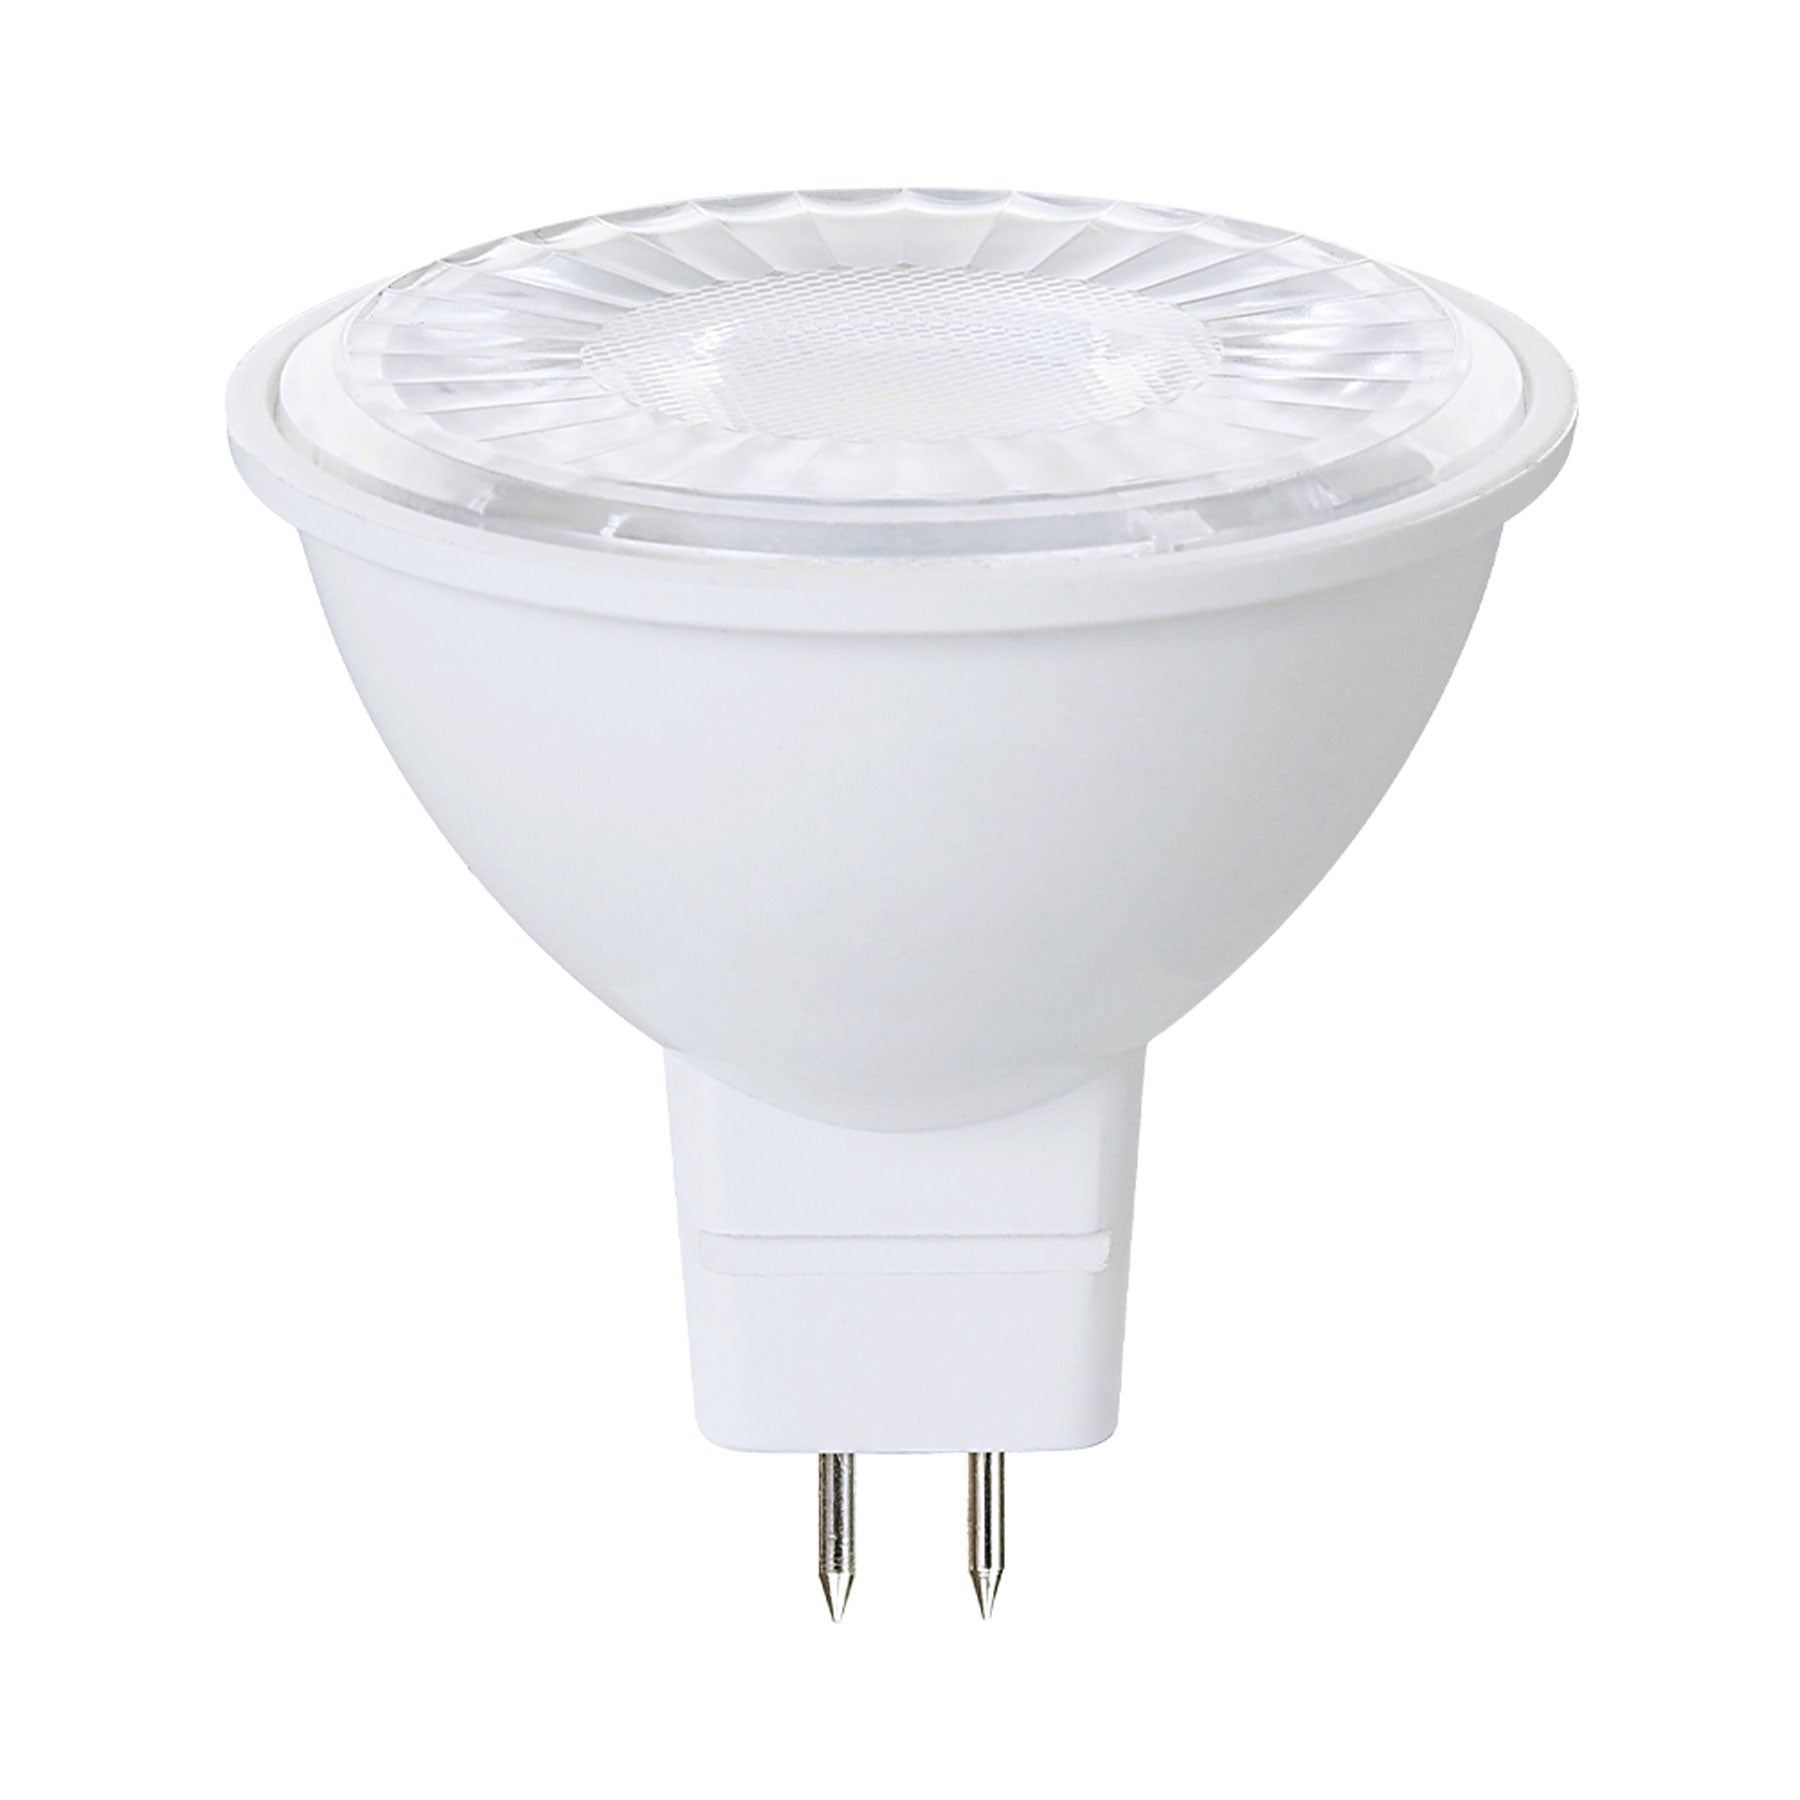 Viribright 50-Watt EQ MR16 GU5.3 LED Indoor Flood Light Bulb